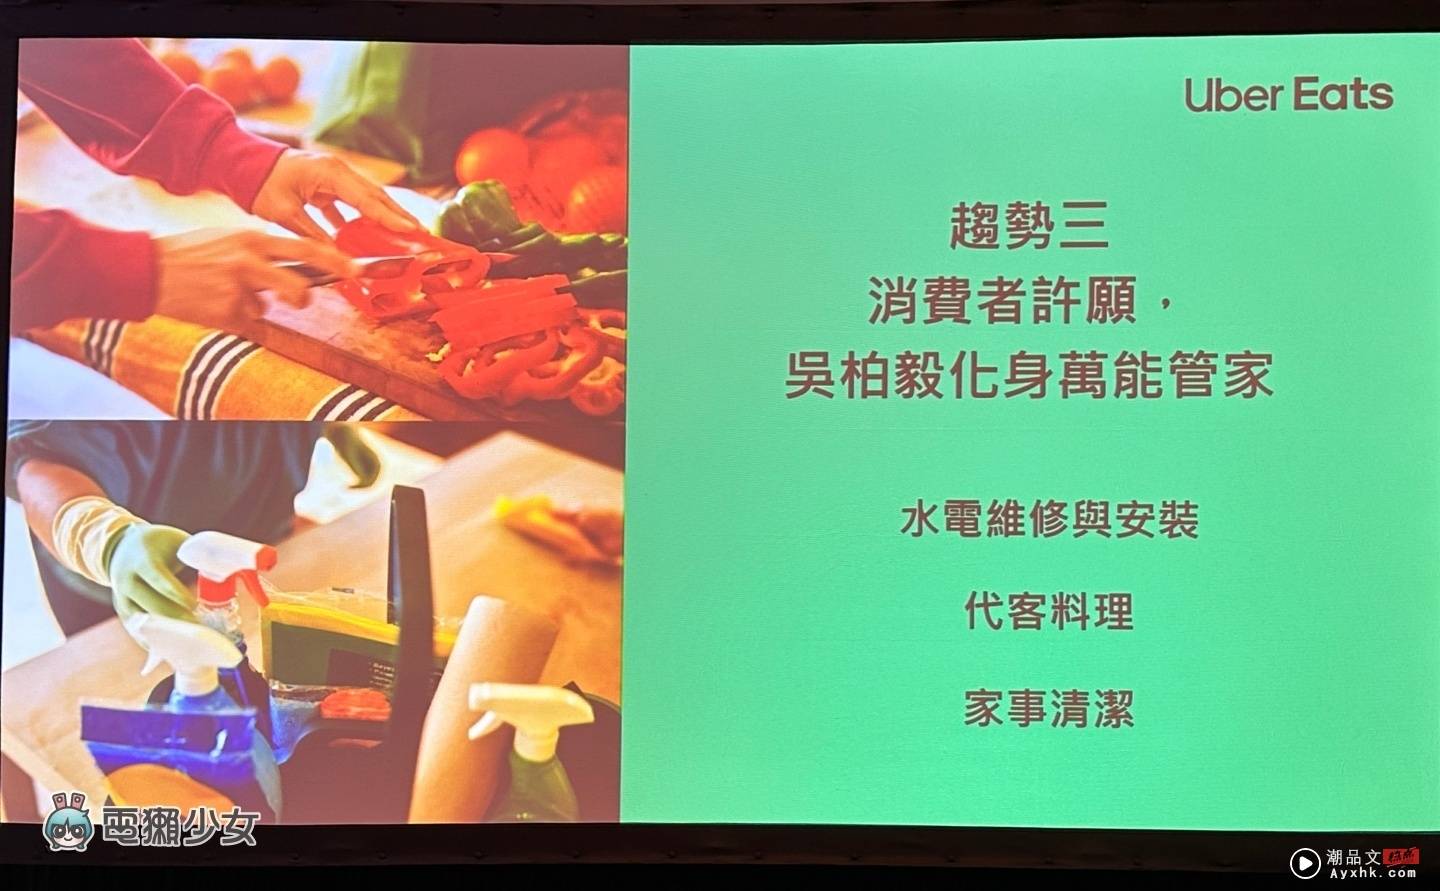 出门｜Uber Eats 中国台湾新代言人出炉！App 将在几个月后正式支援 iPhone‘ 即时动态 ’ 数码科技 图5张